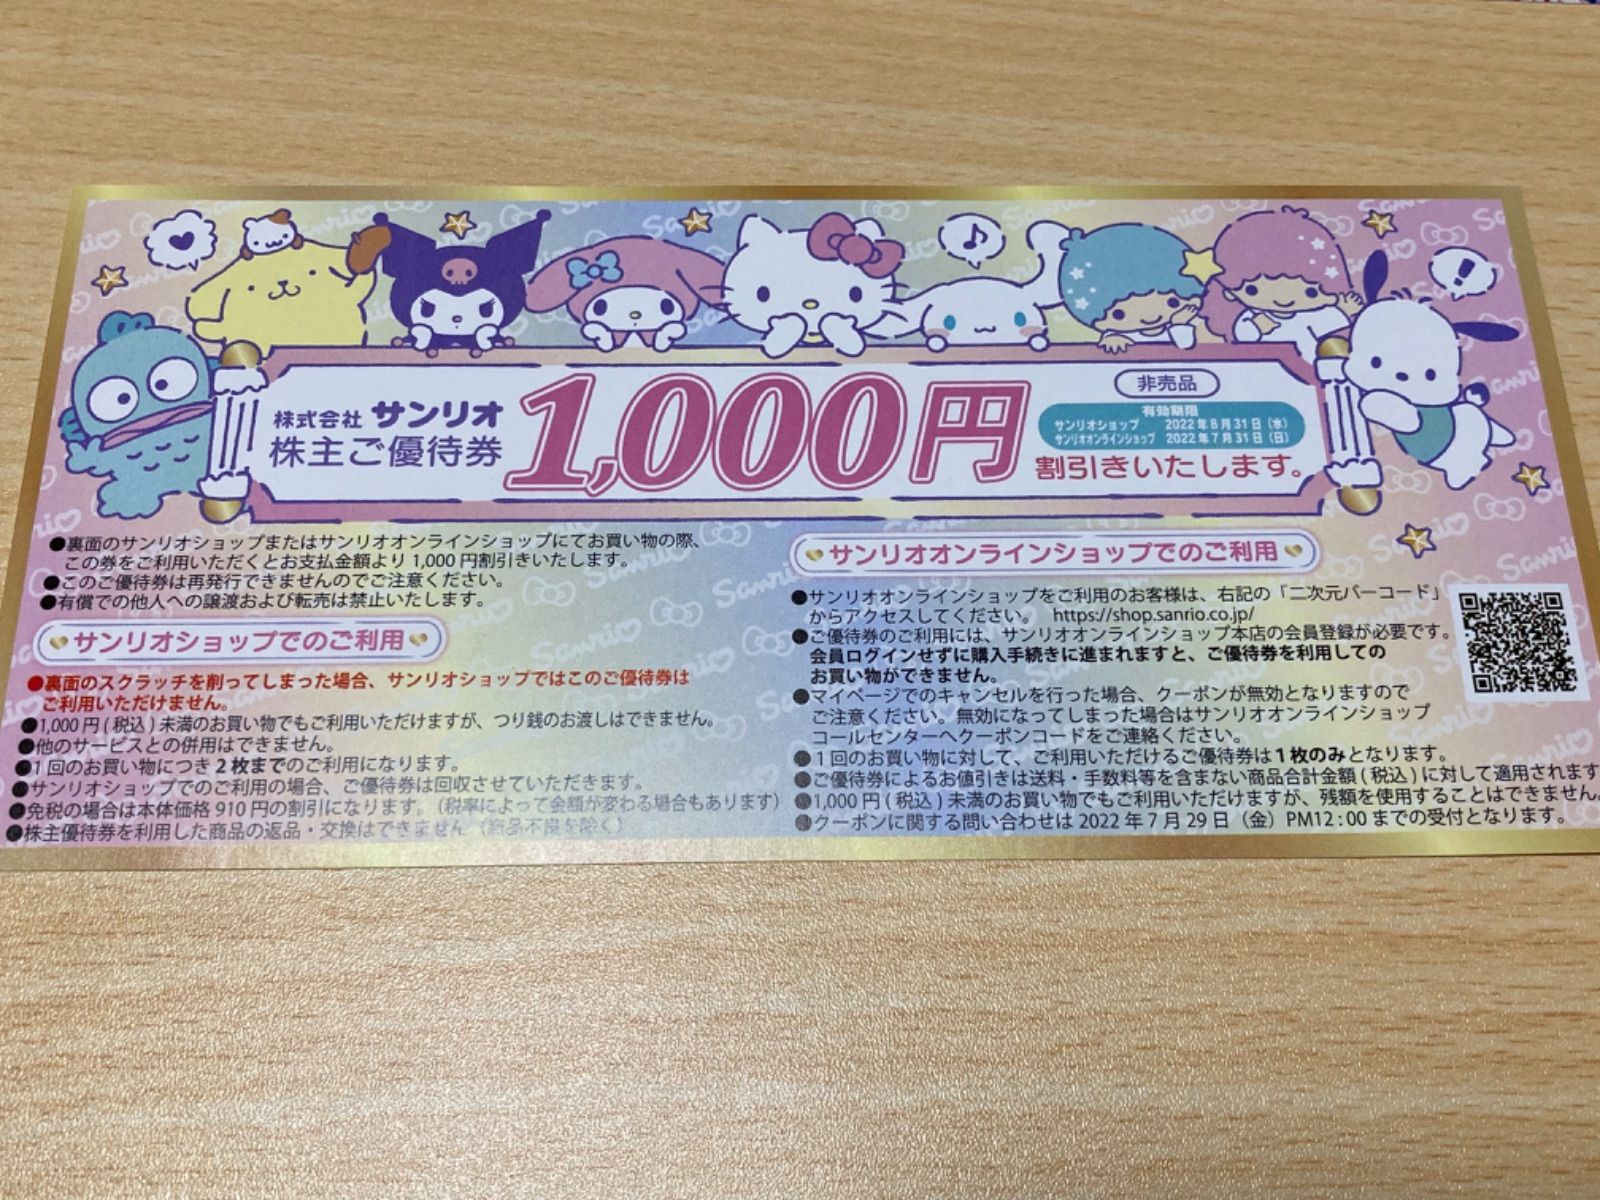 サンリオ株主優待券 入場券3枚+1000円引券 - メルカリ